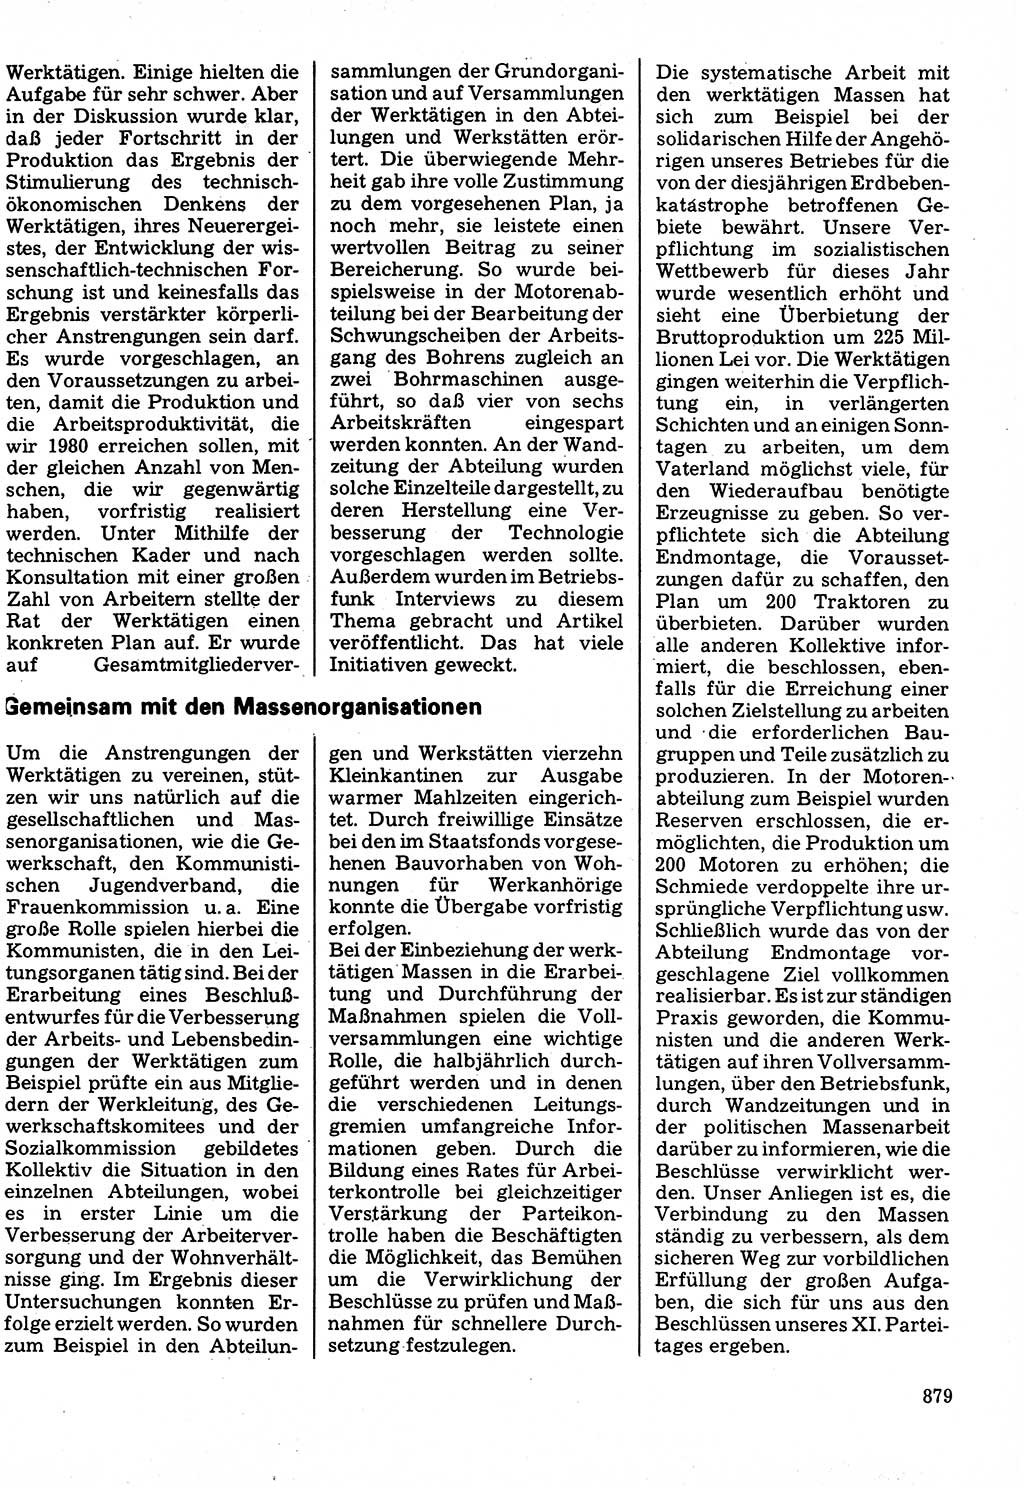 Neuer Weg (NW), Organ des Zentralkomitees (ZK) der SED (Sozialistische Einheitspartei Deutschlands) für Fragen des Parteilebens, 32. Jahrgang [Deutsche Demokratische Republik (DDR)] 1977, Seite 879 (NW ZK SED DDR 1977, S. 879)